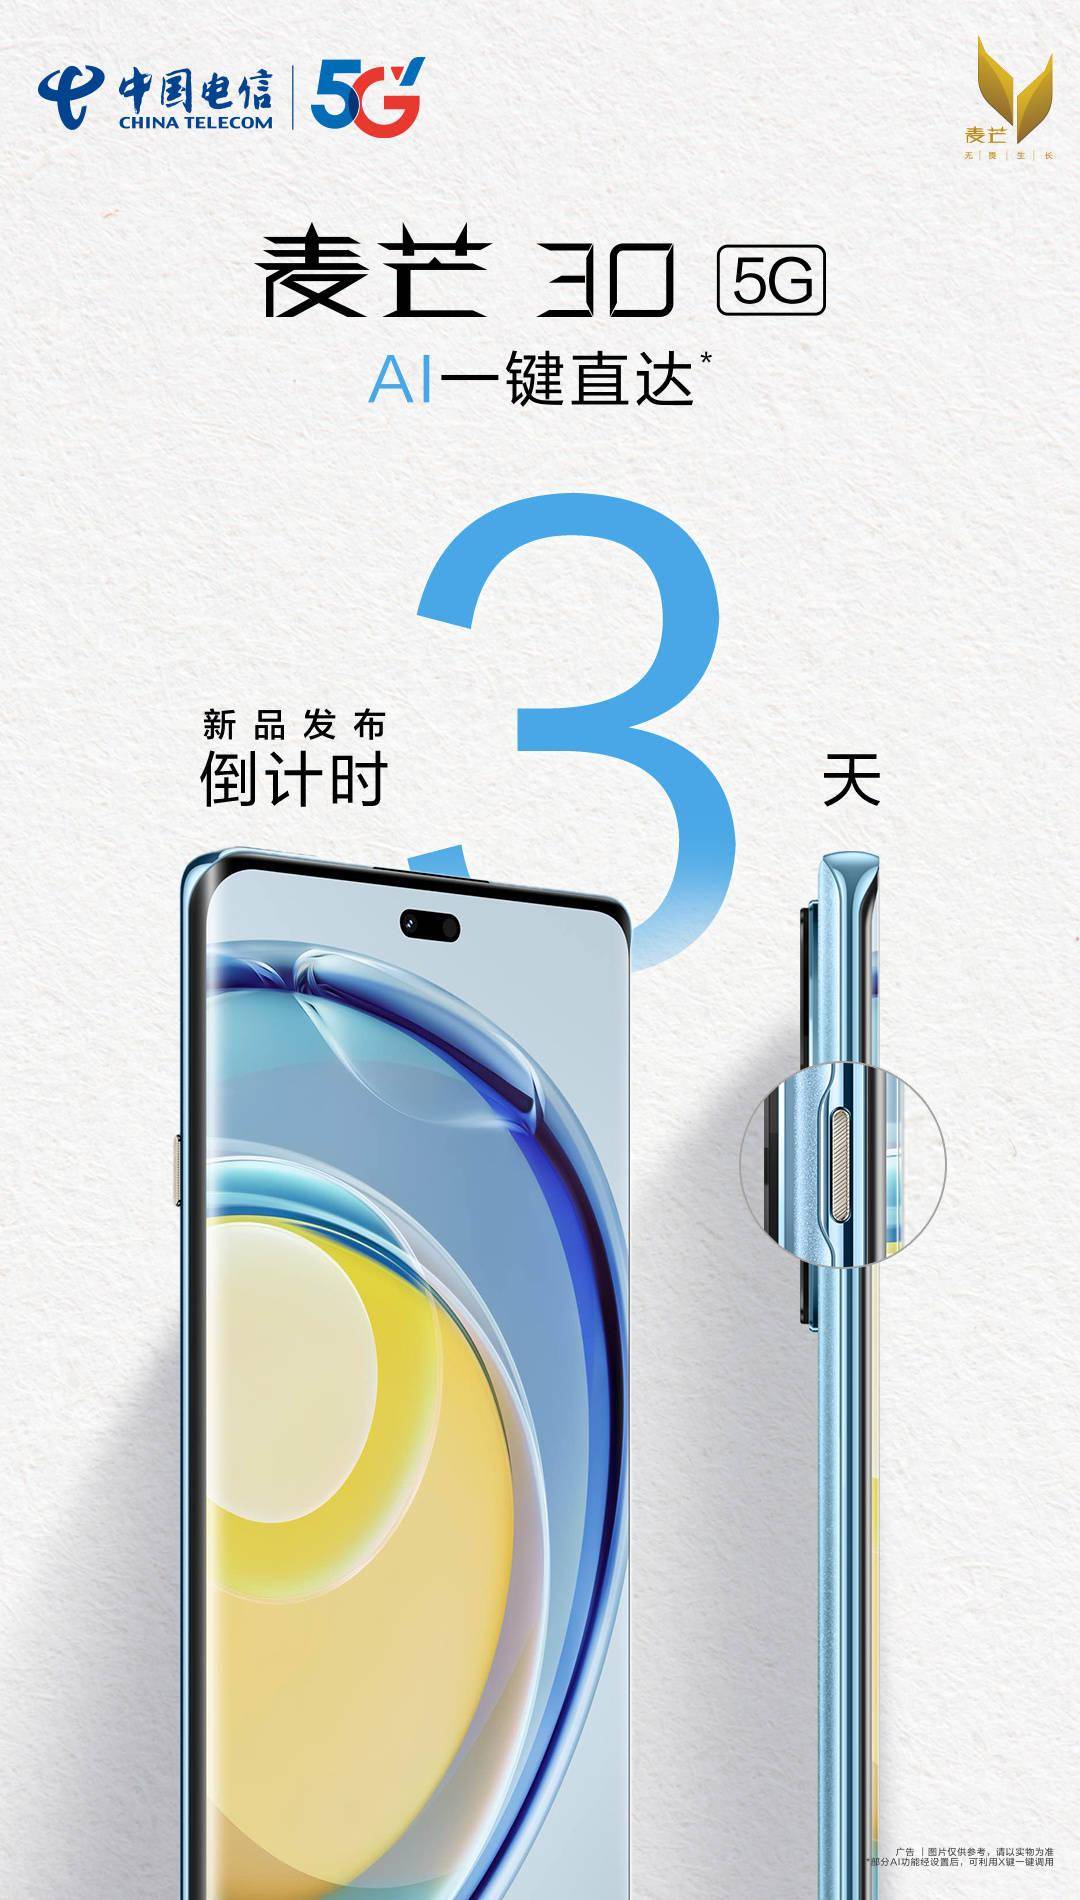 中国电信麦芒30手机7月18日发布 搭载曲面屏